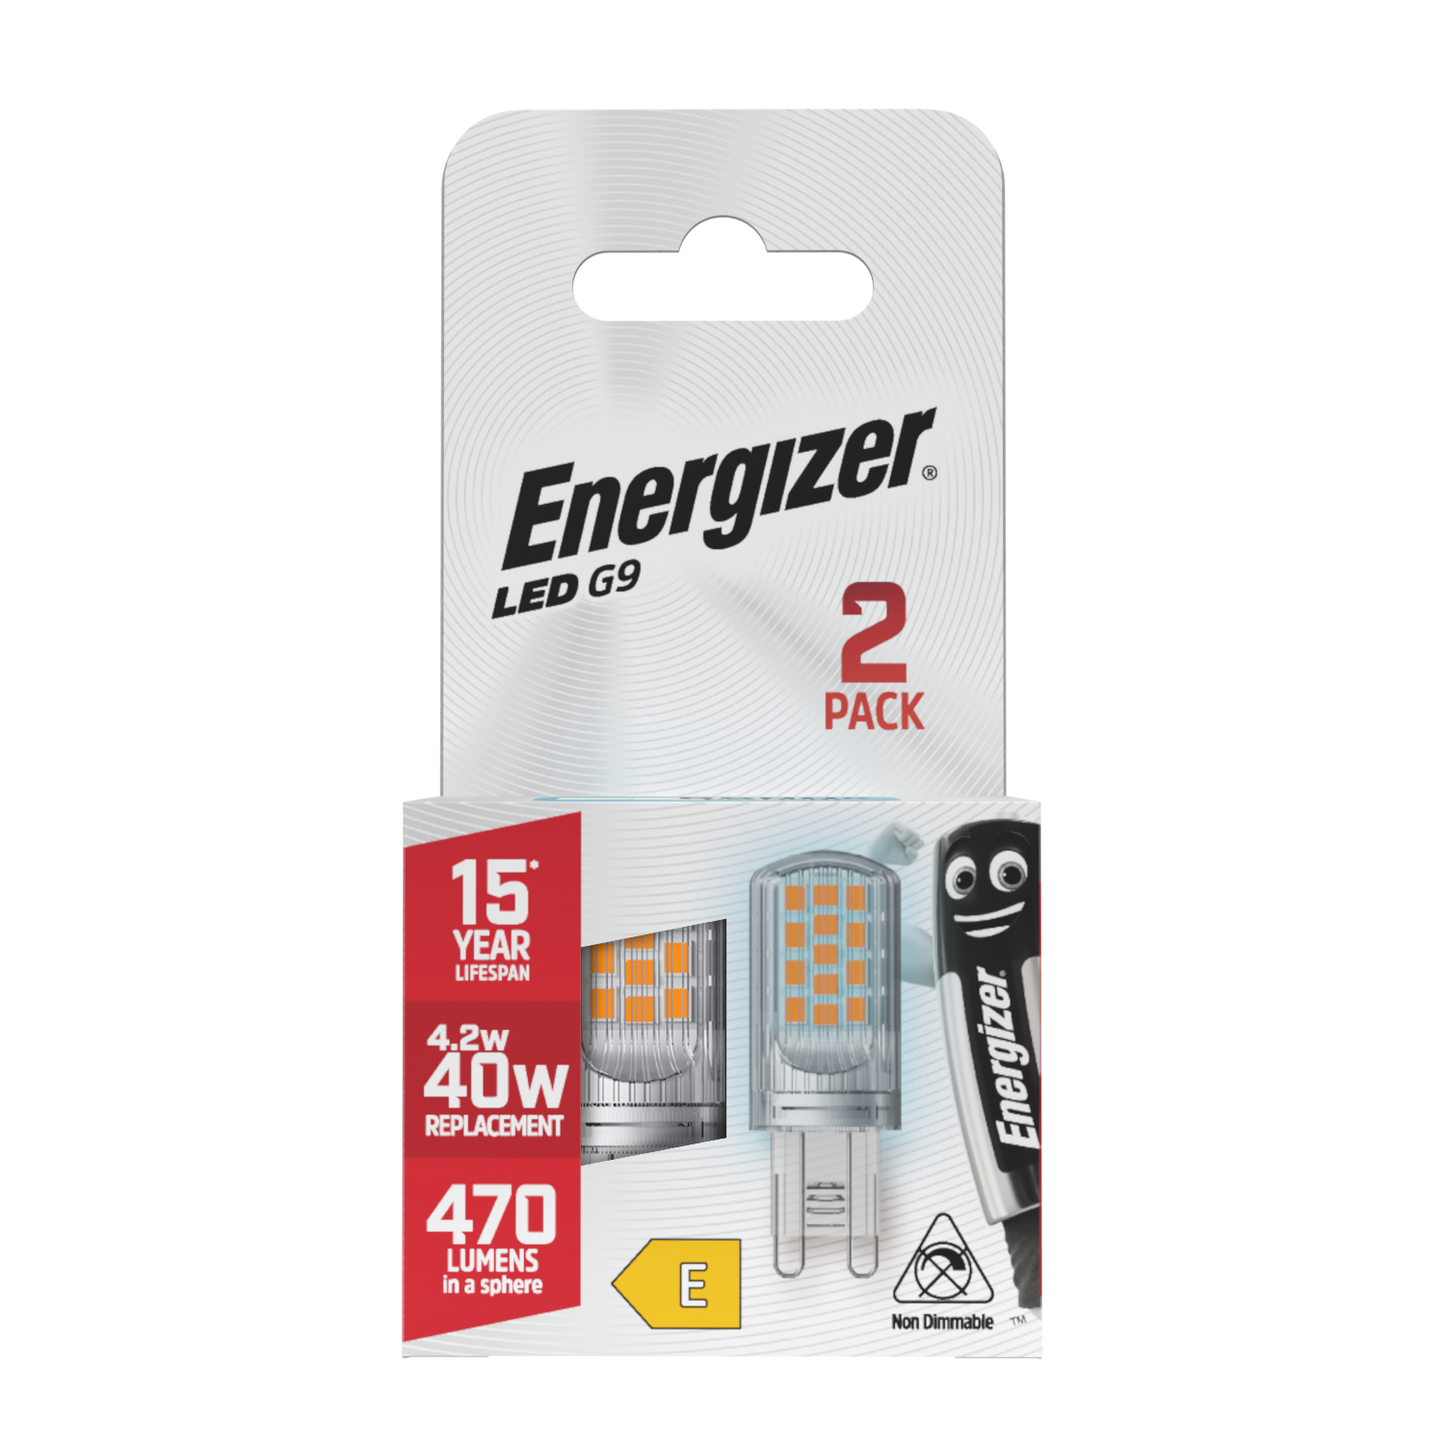 Energizer LED G9 470lm 4.2W 6,500K (Daylight), Box of 2